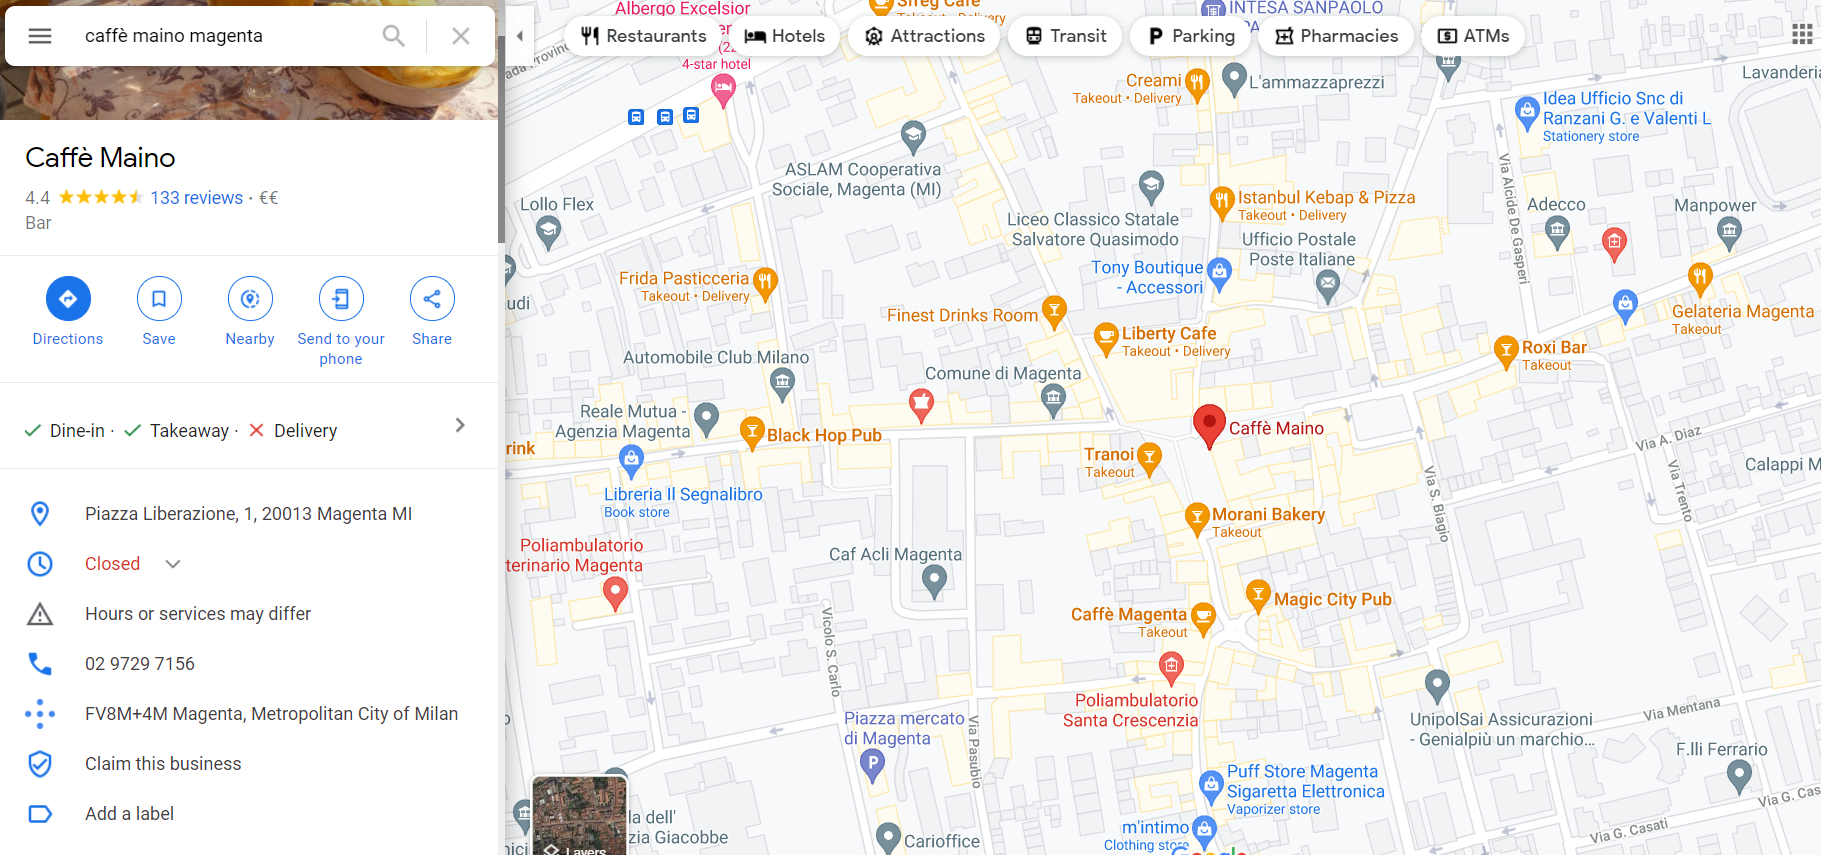 Risultato di ricerca su Google Maps del bar Maino a Magenta